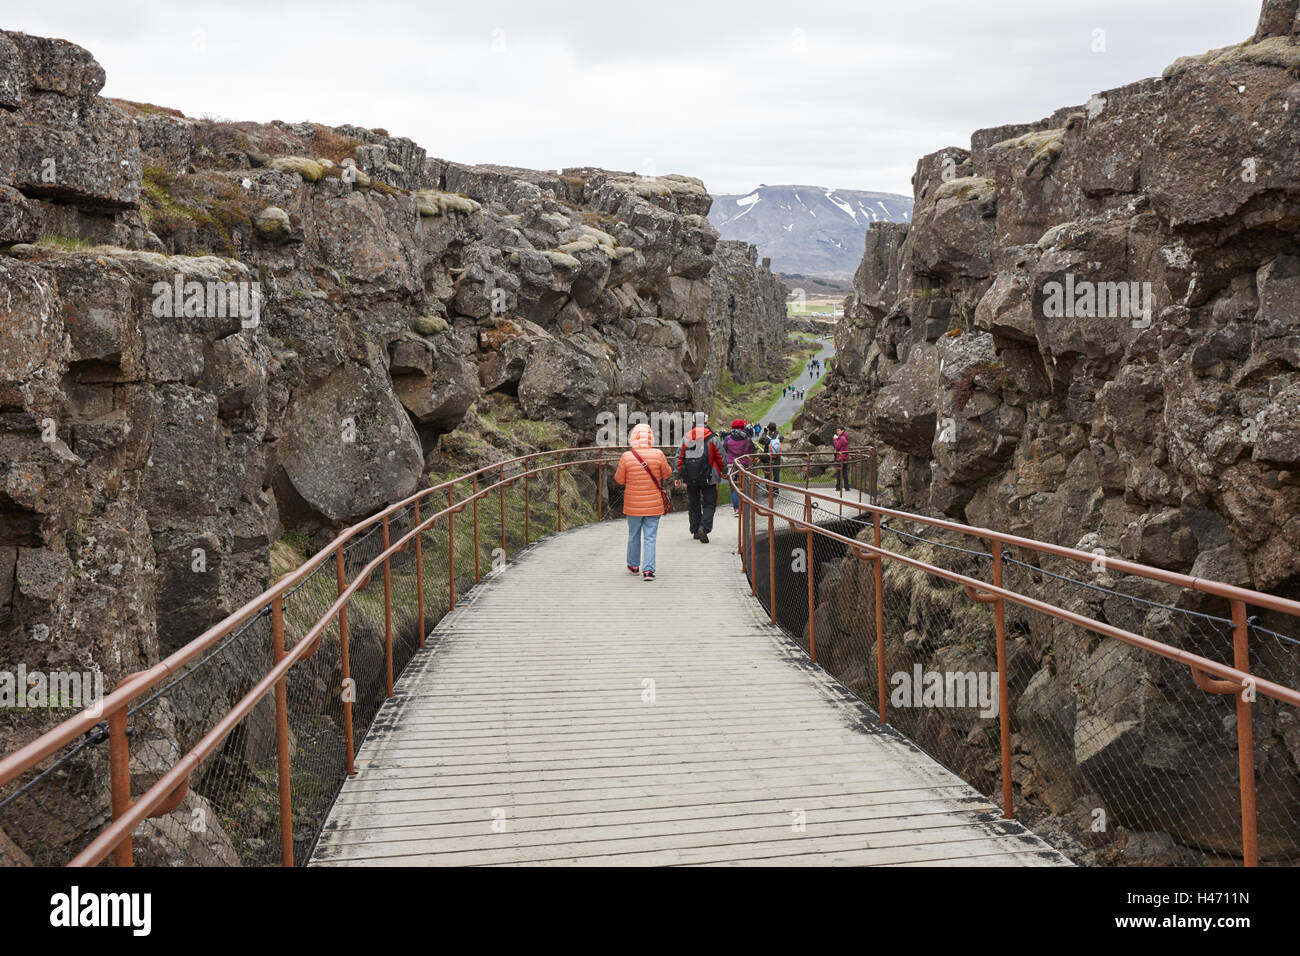 Personnes marchant vers le bas à travers les fissures dans les plaques continentales au parc national de thingvellir Islande Banque D'Images